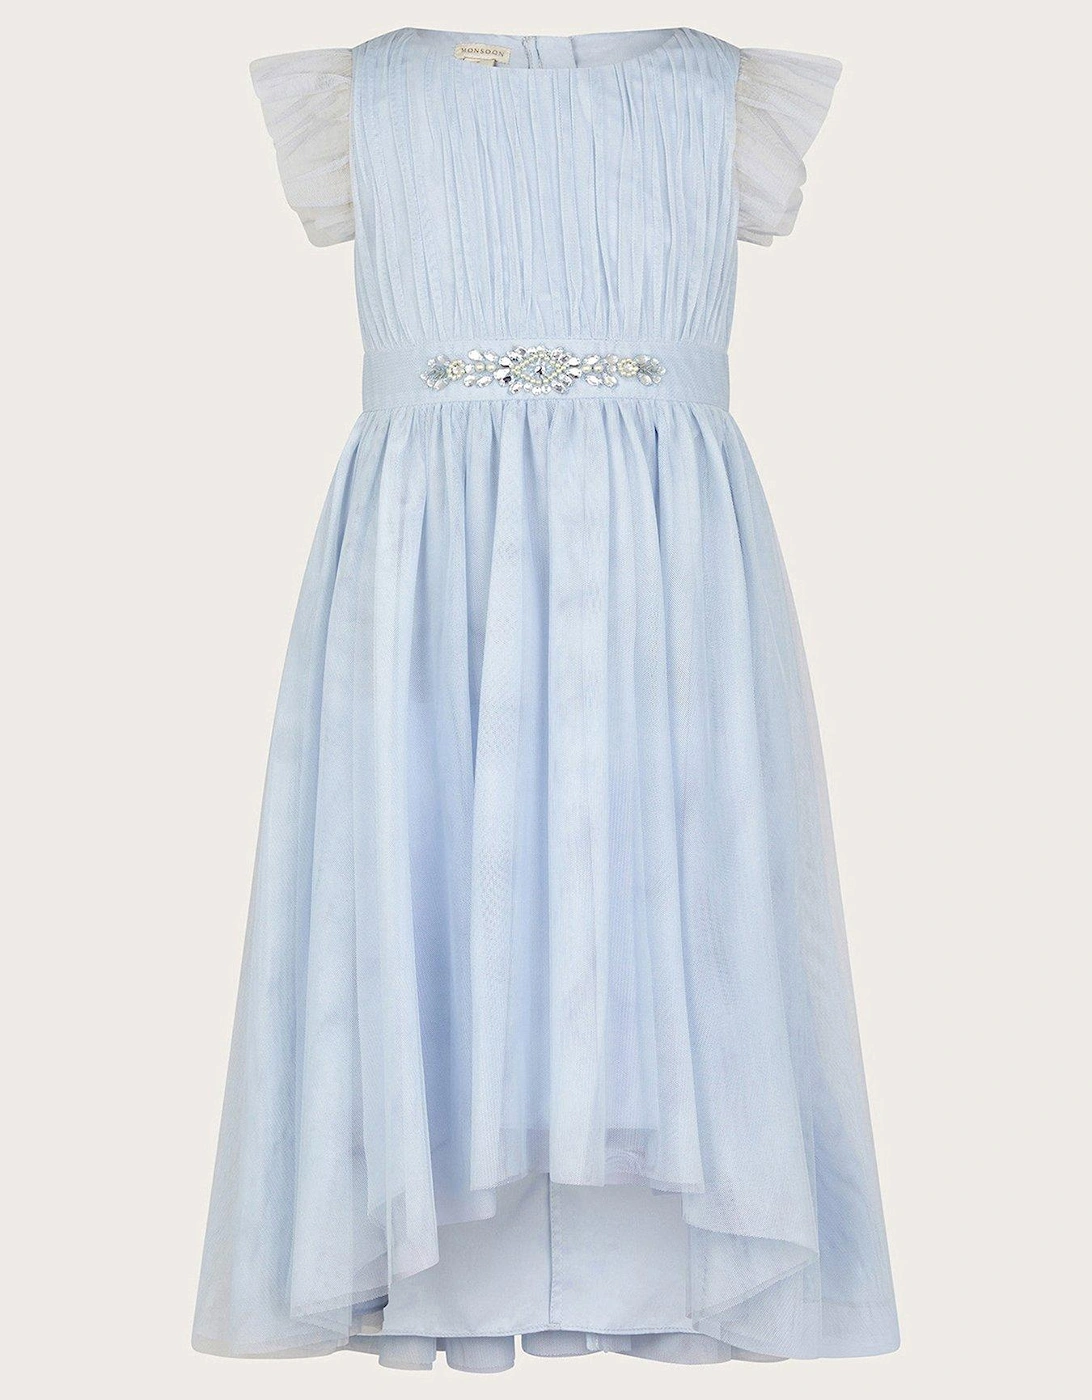 Girls Penelope Belt Dress - Pale Blue, 2 of 1